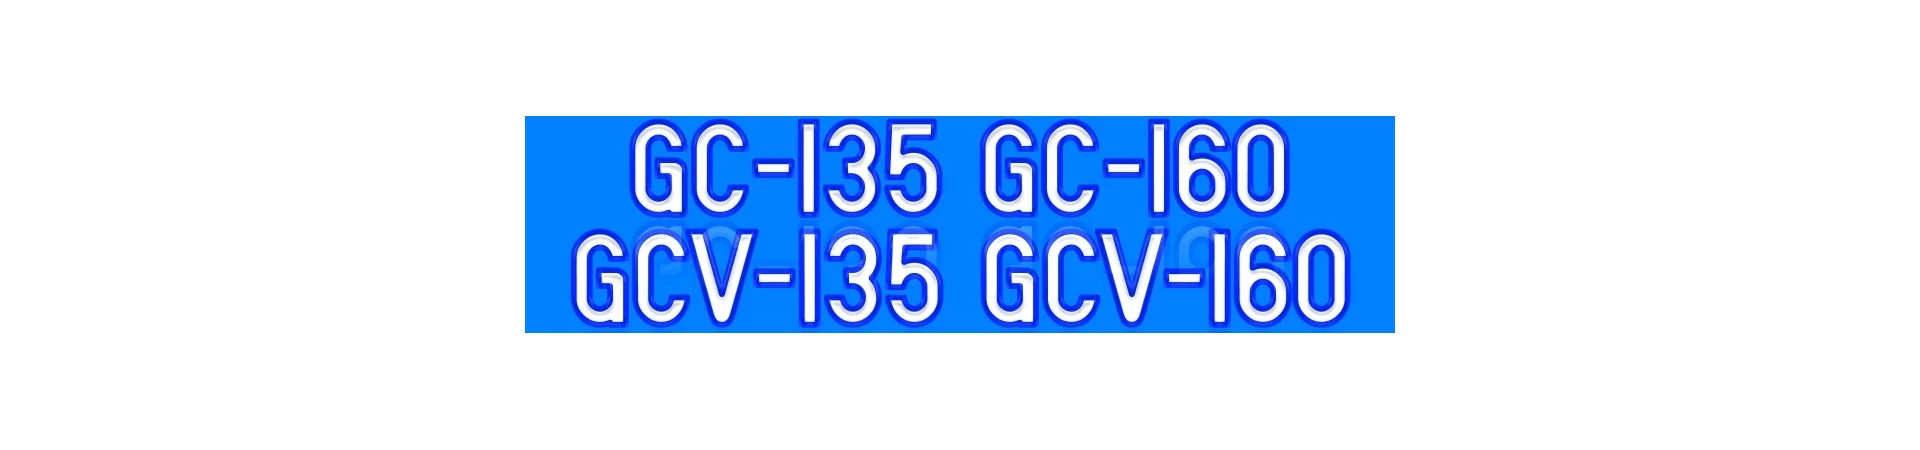 GC135 GC160 GCV135 GCV160